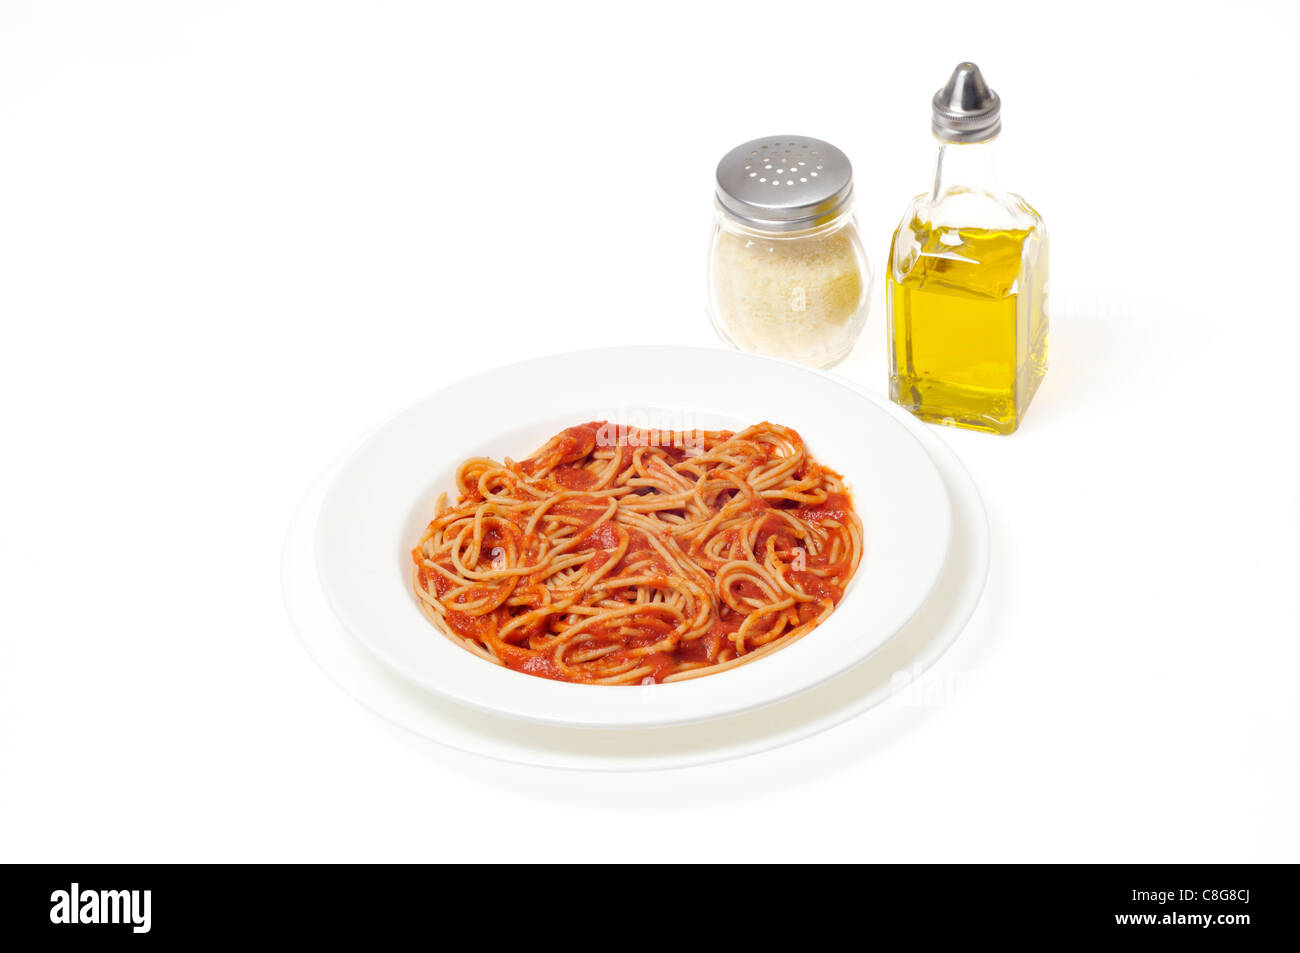 Spaghetti de blé entier cuit dans un bol blanc avec des condiments d'huile d'olive et parmesan râpé sur fond blanc. Banque D'Images